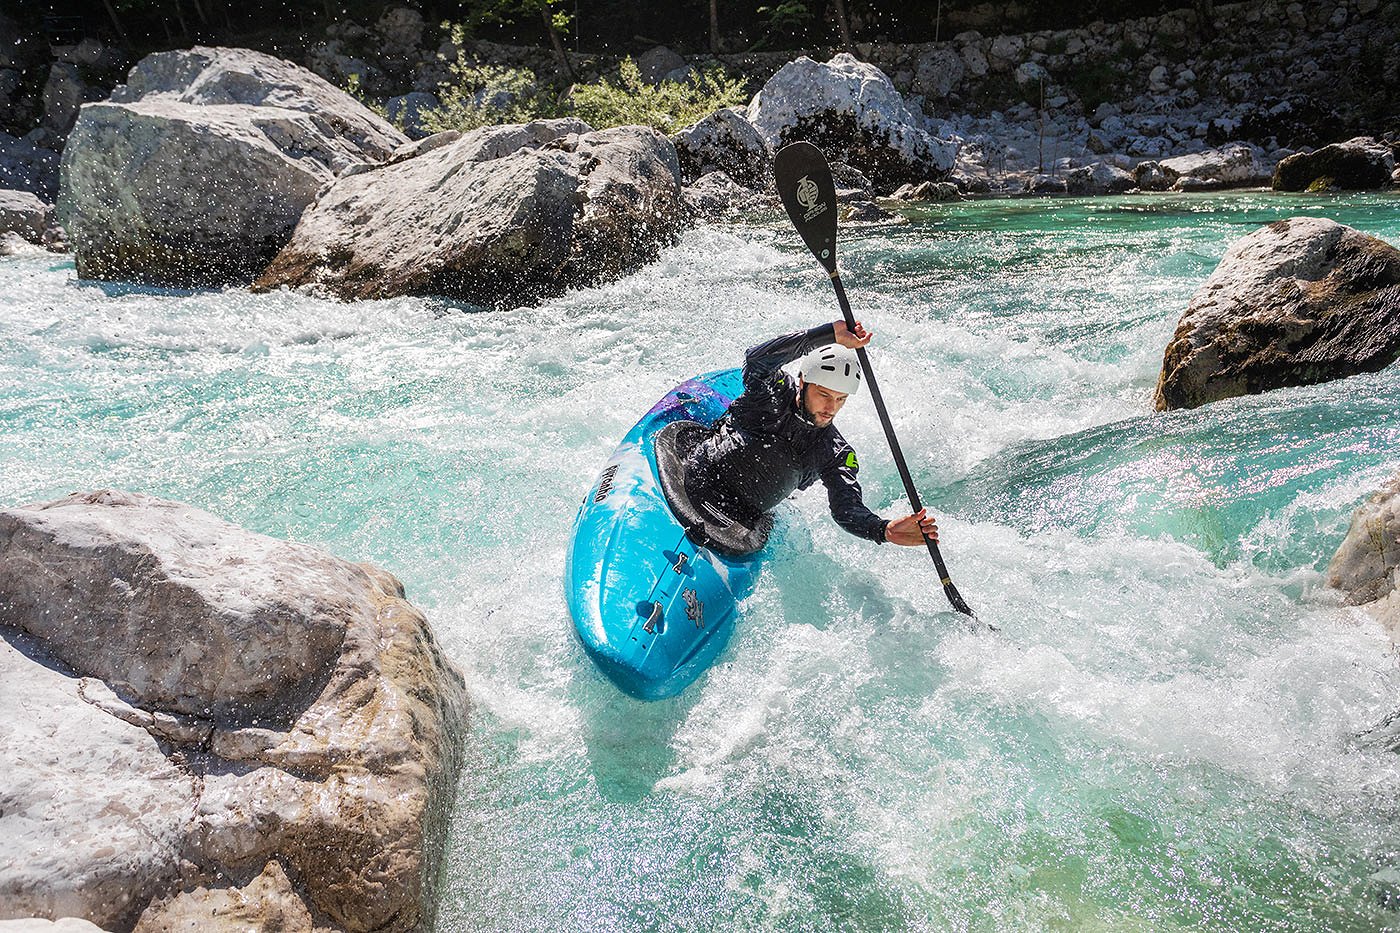 Il kayaker gira in una controcorrente sul fiume color smeraldo Isonzo